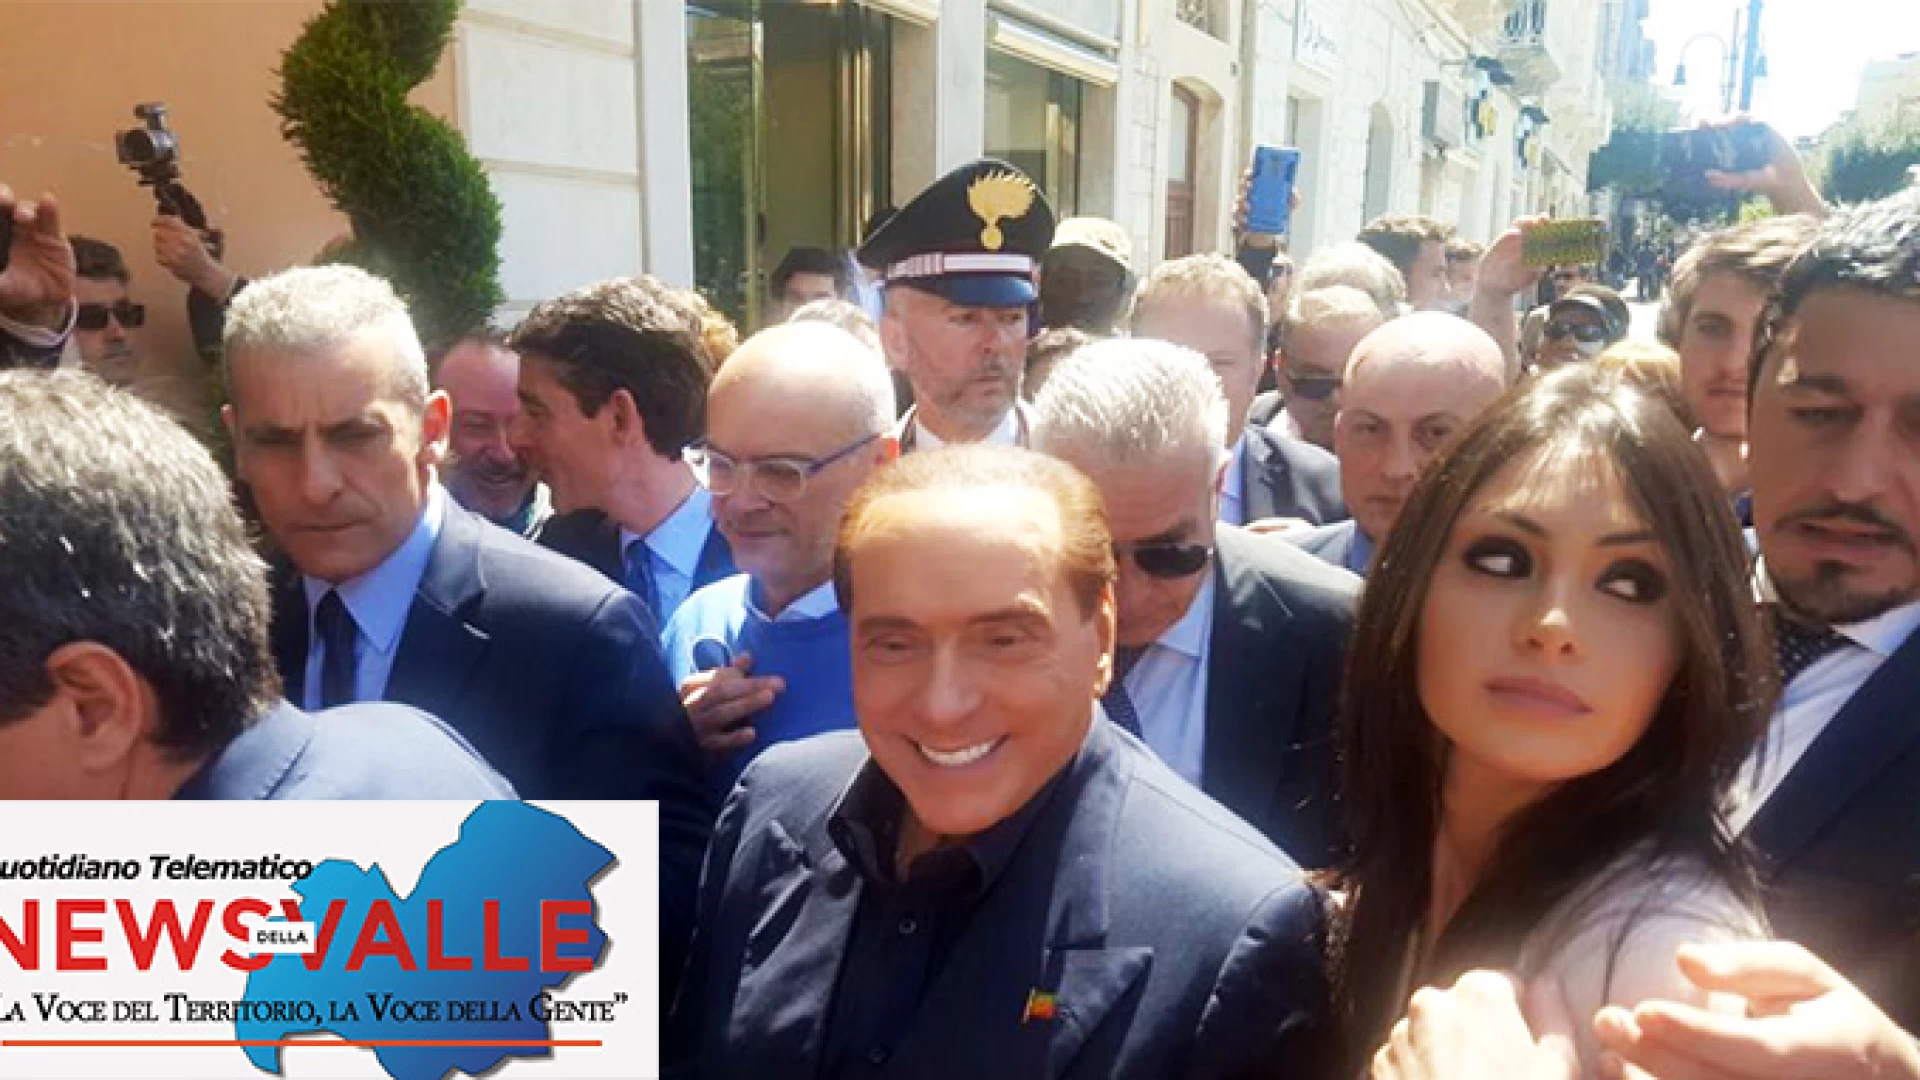 Regionali 2018: Berlusconi è arrivato a Termoli. La folla lo blocca al centro di Termoli per più di un’ora. Saluti e strette di mano per tutti.